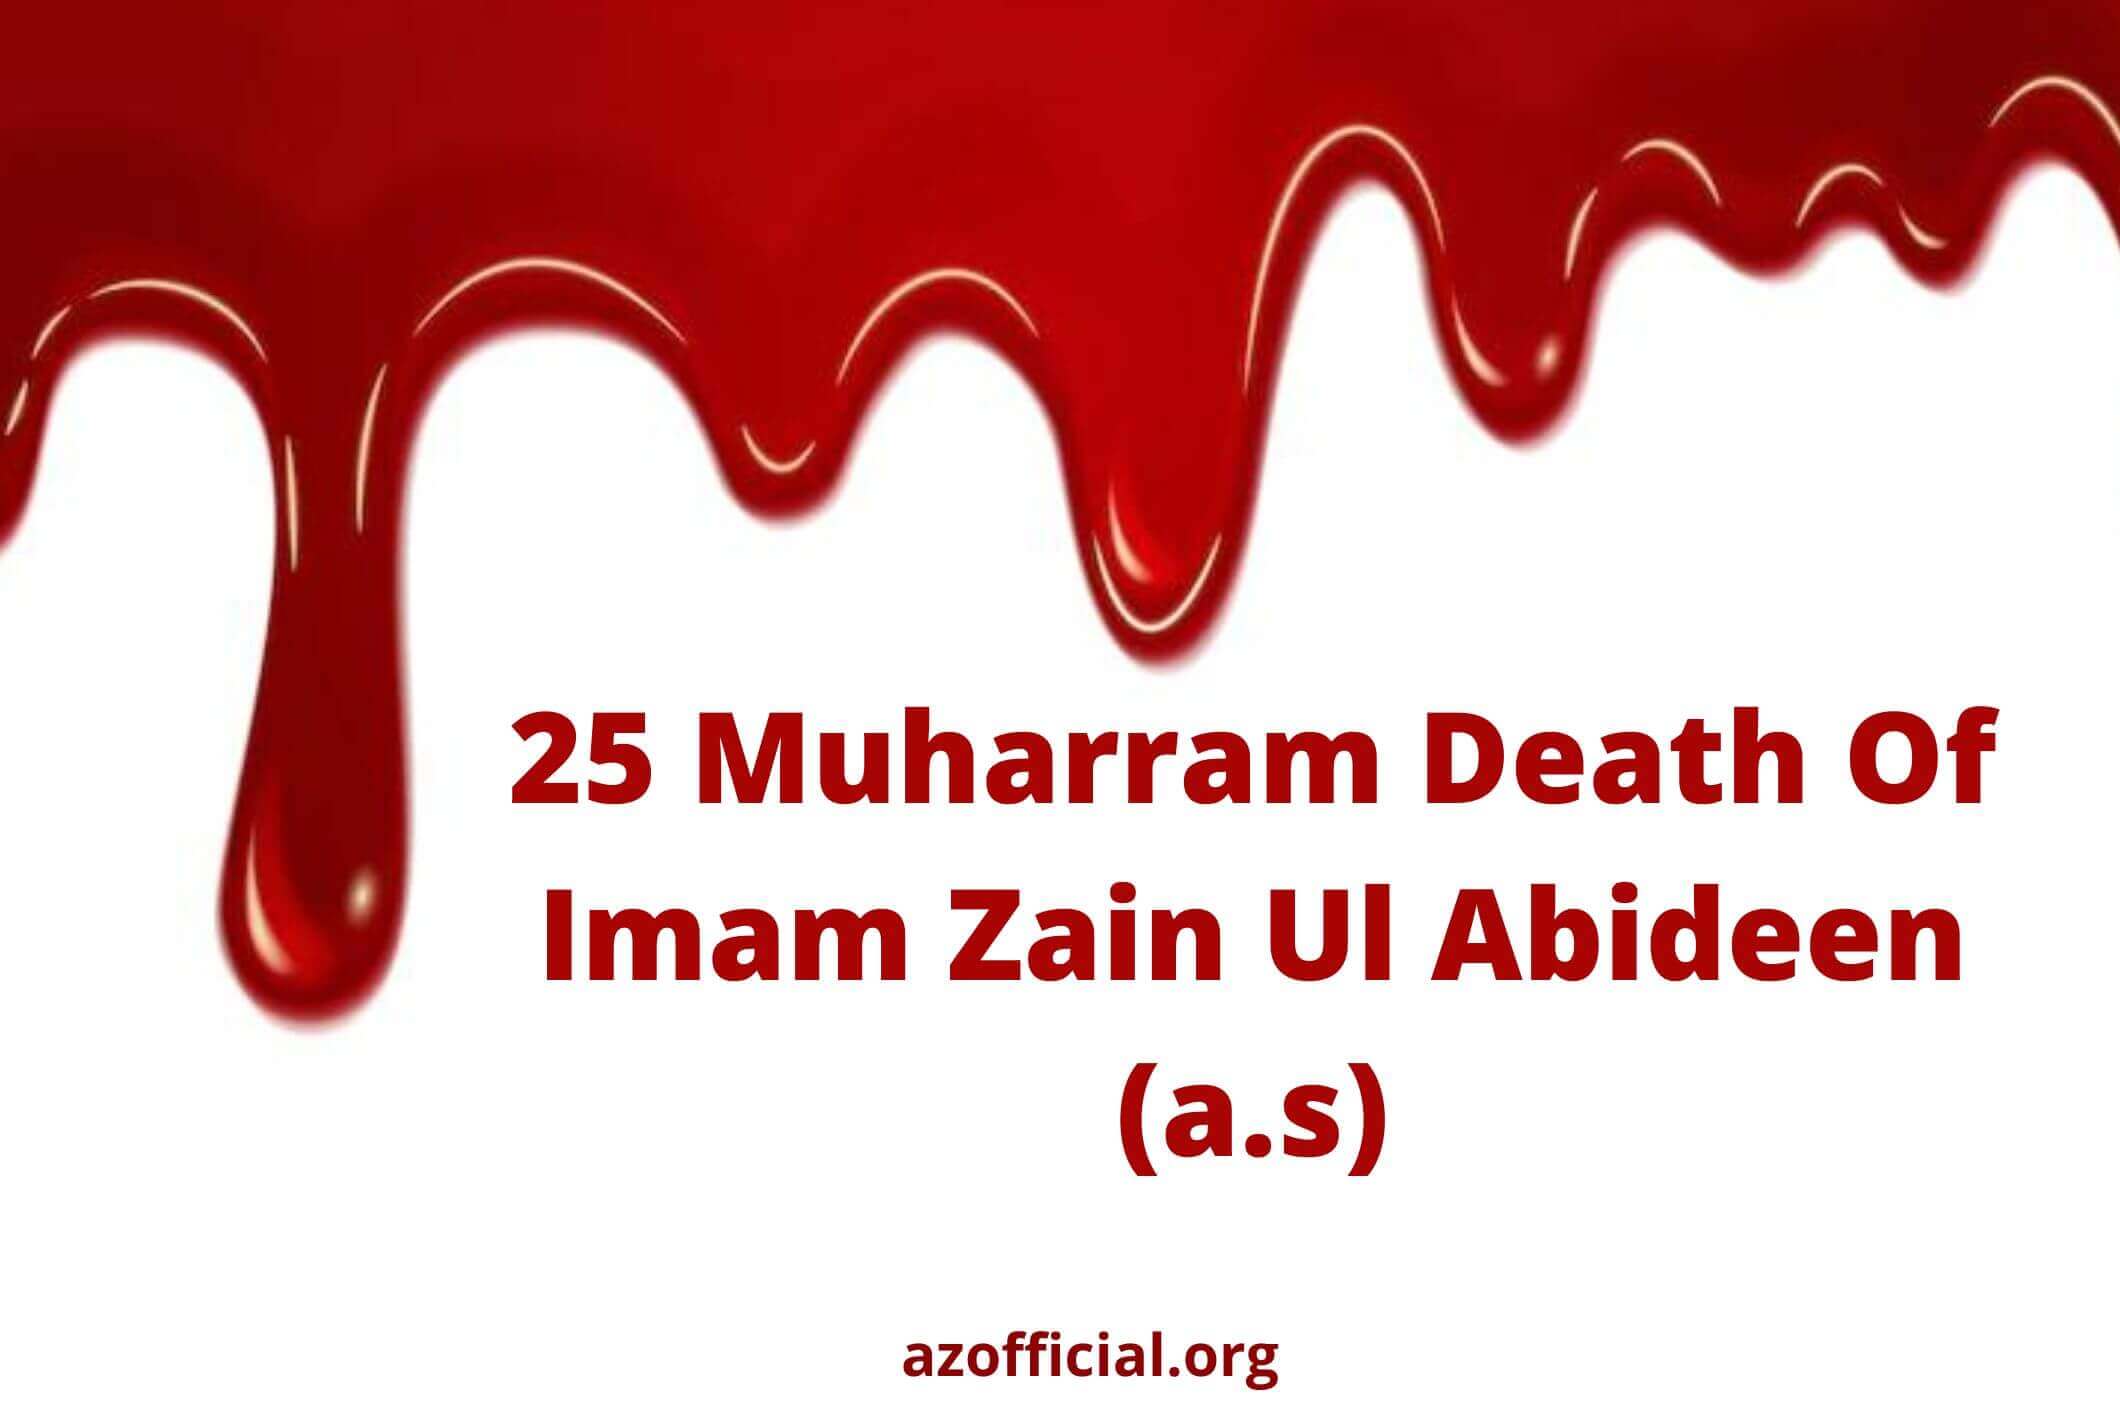 25 Muharram Death Of Imam